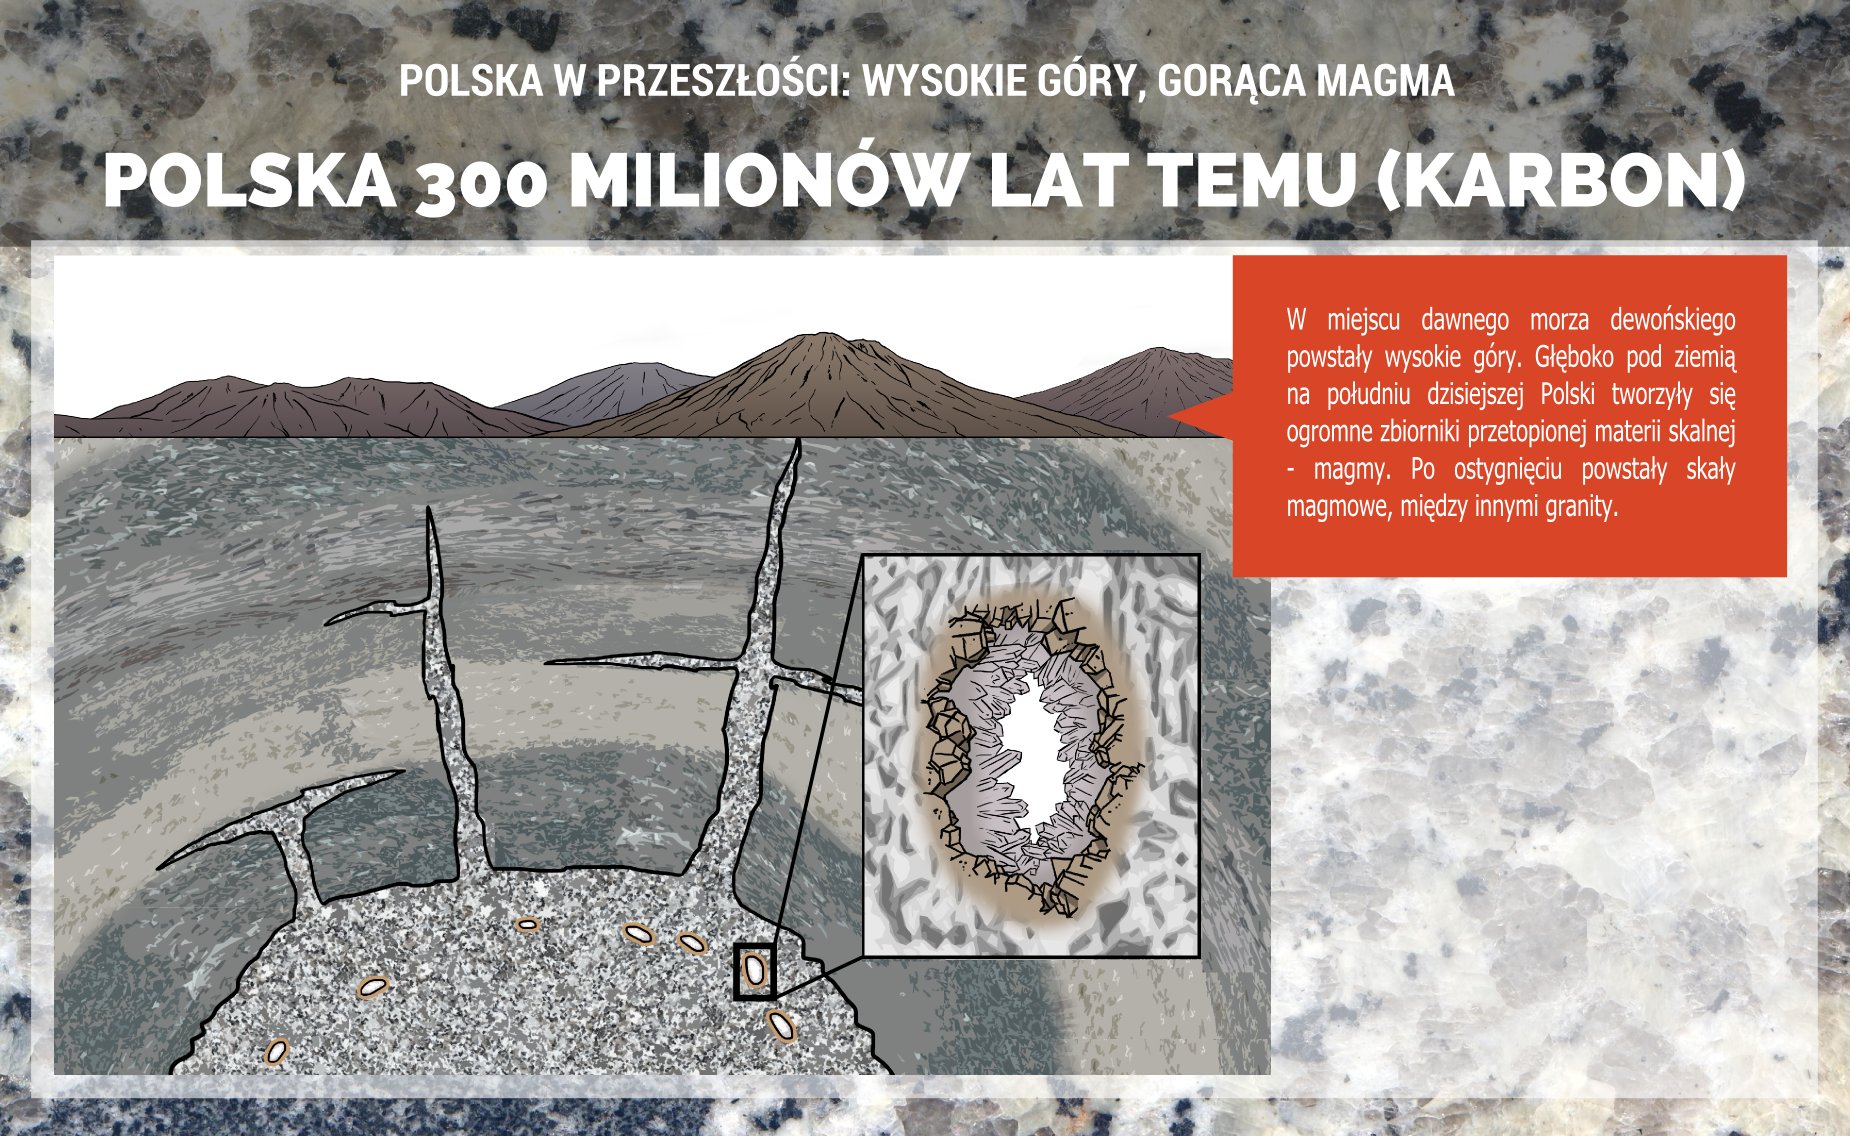 Polska w karbonie - powstawanie granitoidów Dolnego Śląska - plakat.